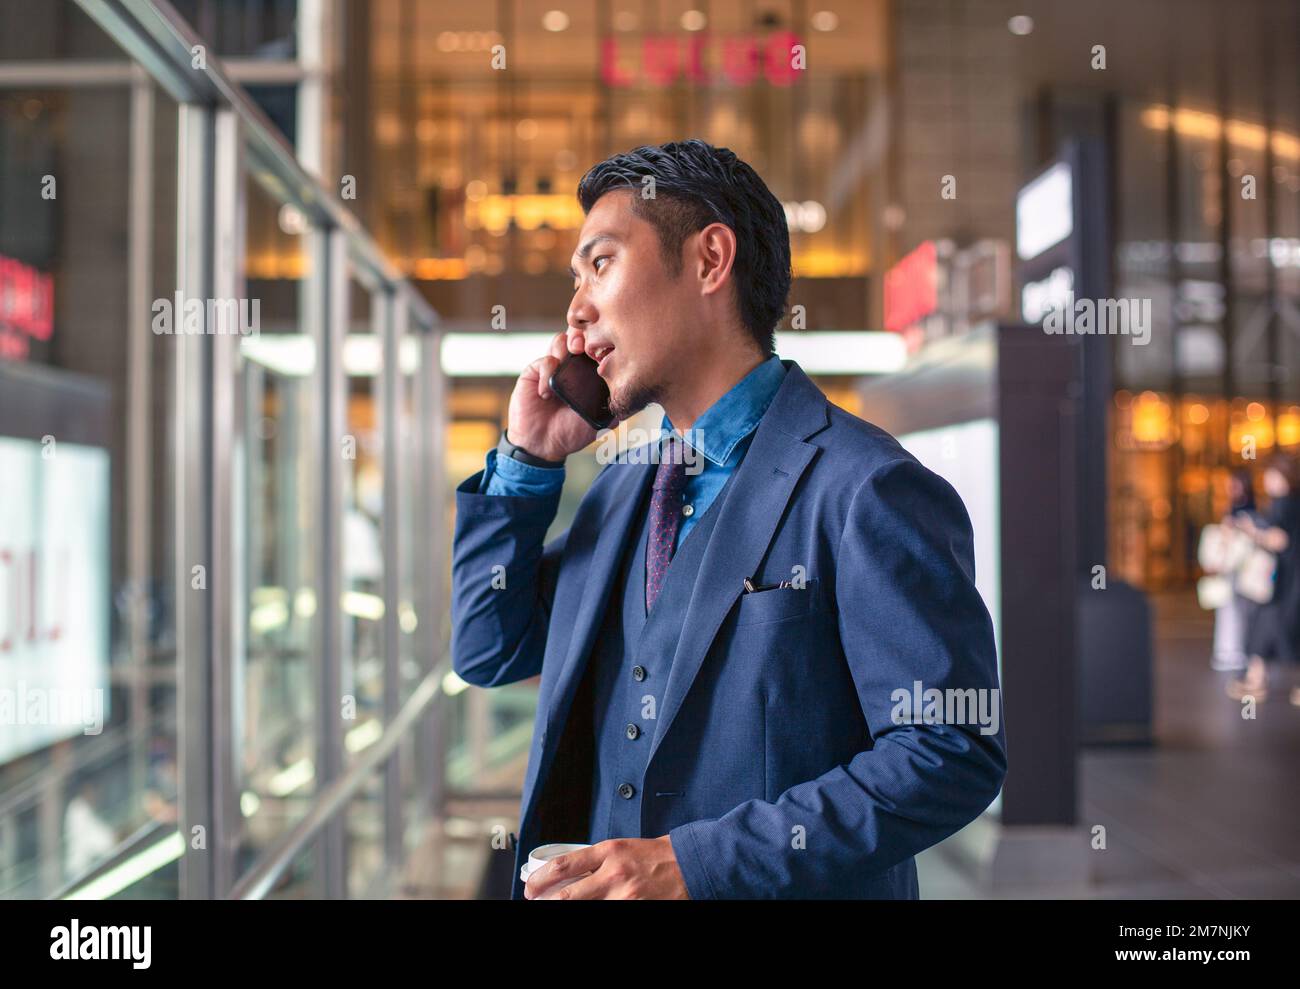 Ein junger Geschäftsmann in einem blauen Anzug, der in der Innenstadt unterwegs ist und mit seinem Handy spricht. Stockfoto